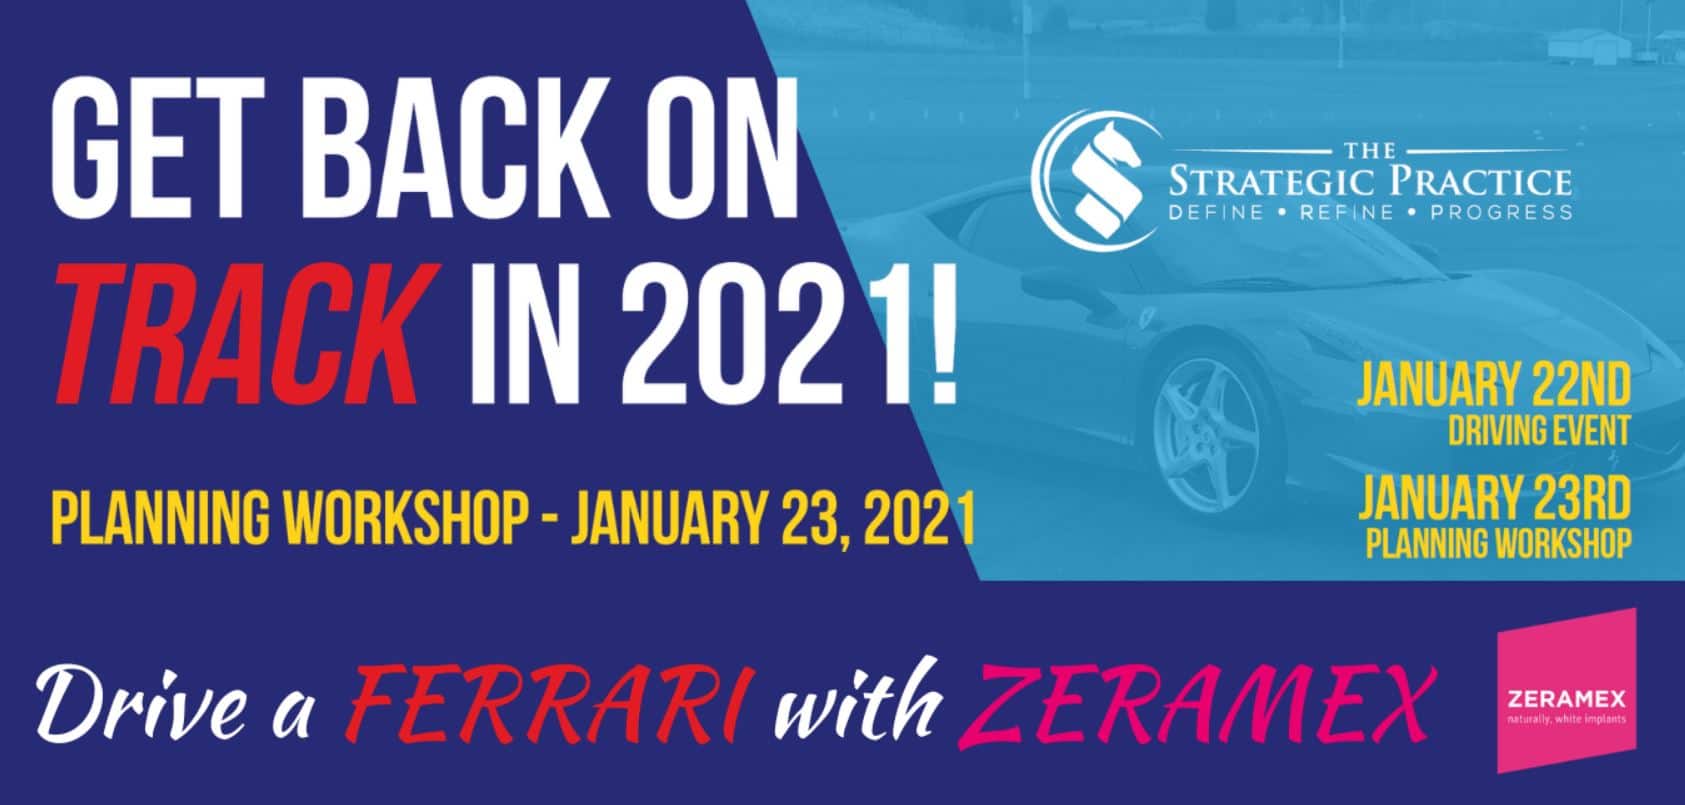 Drive a ferrari with zeramex